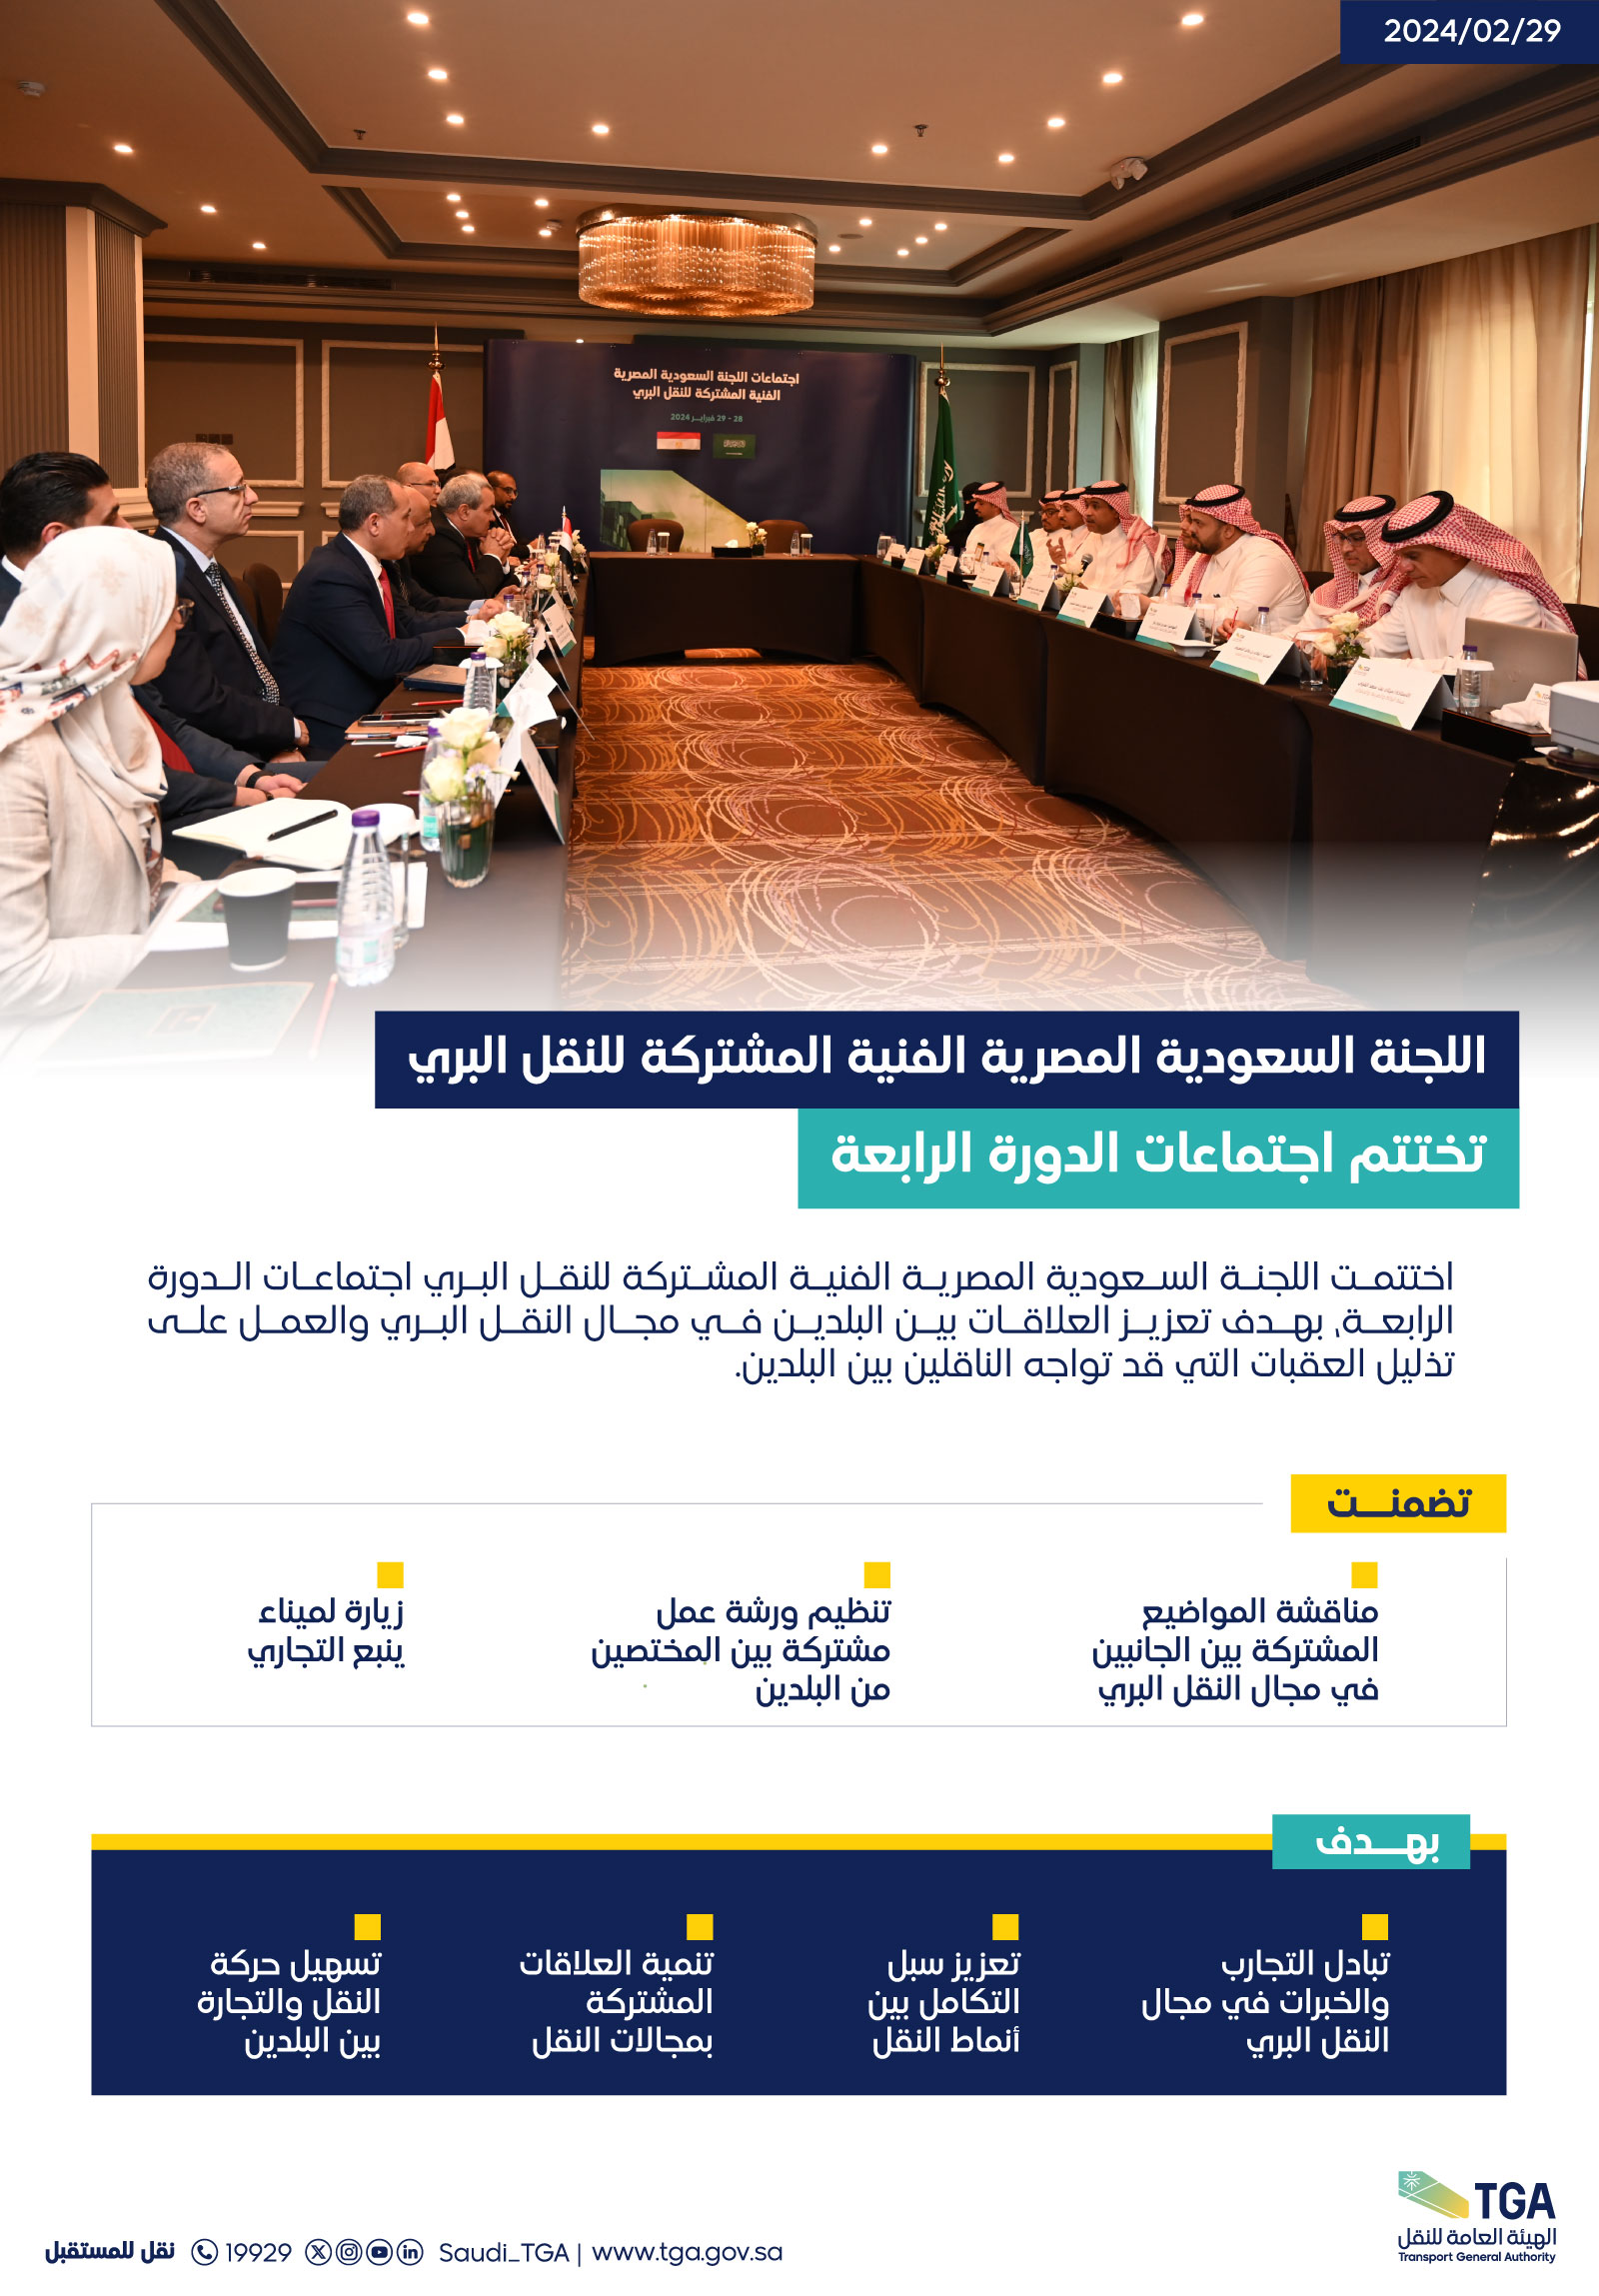 اللجنة السعودية المصرية للنقل البري تختتم اجتماعات الدورة الرابعة